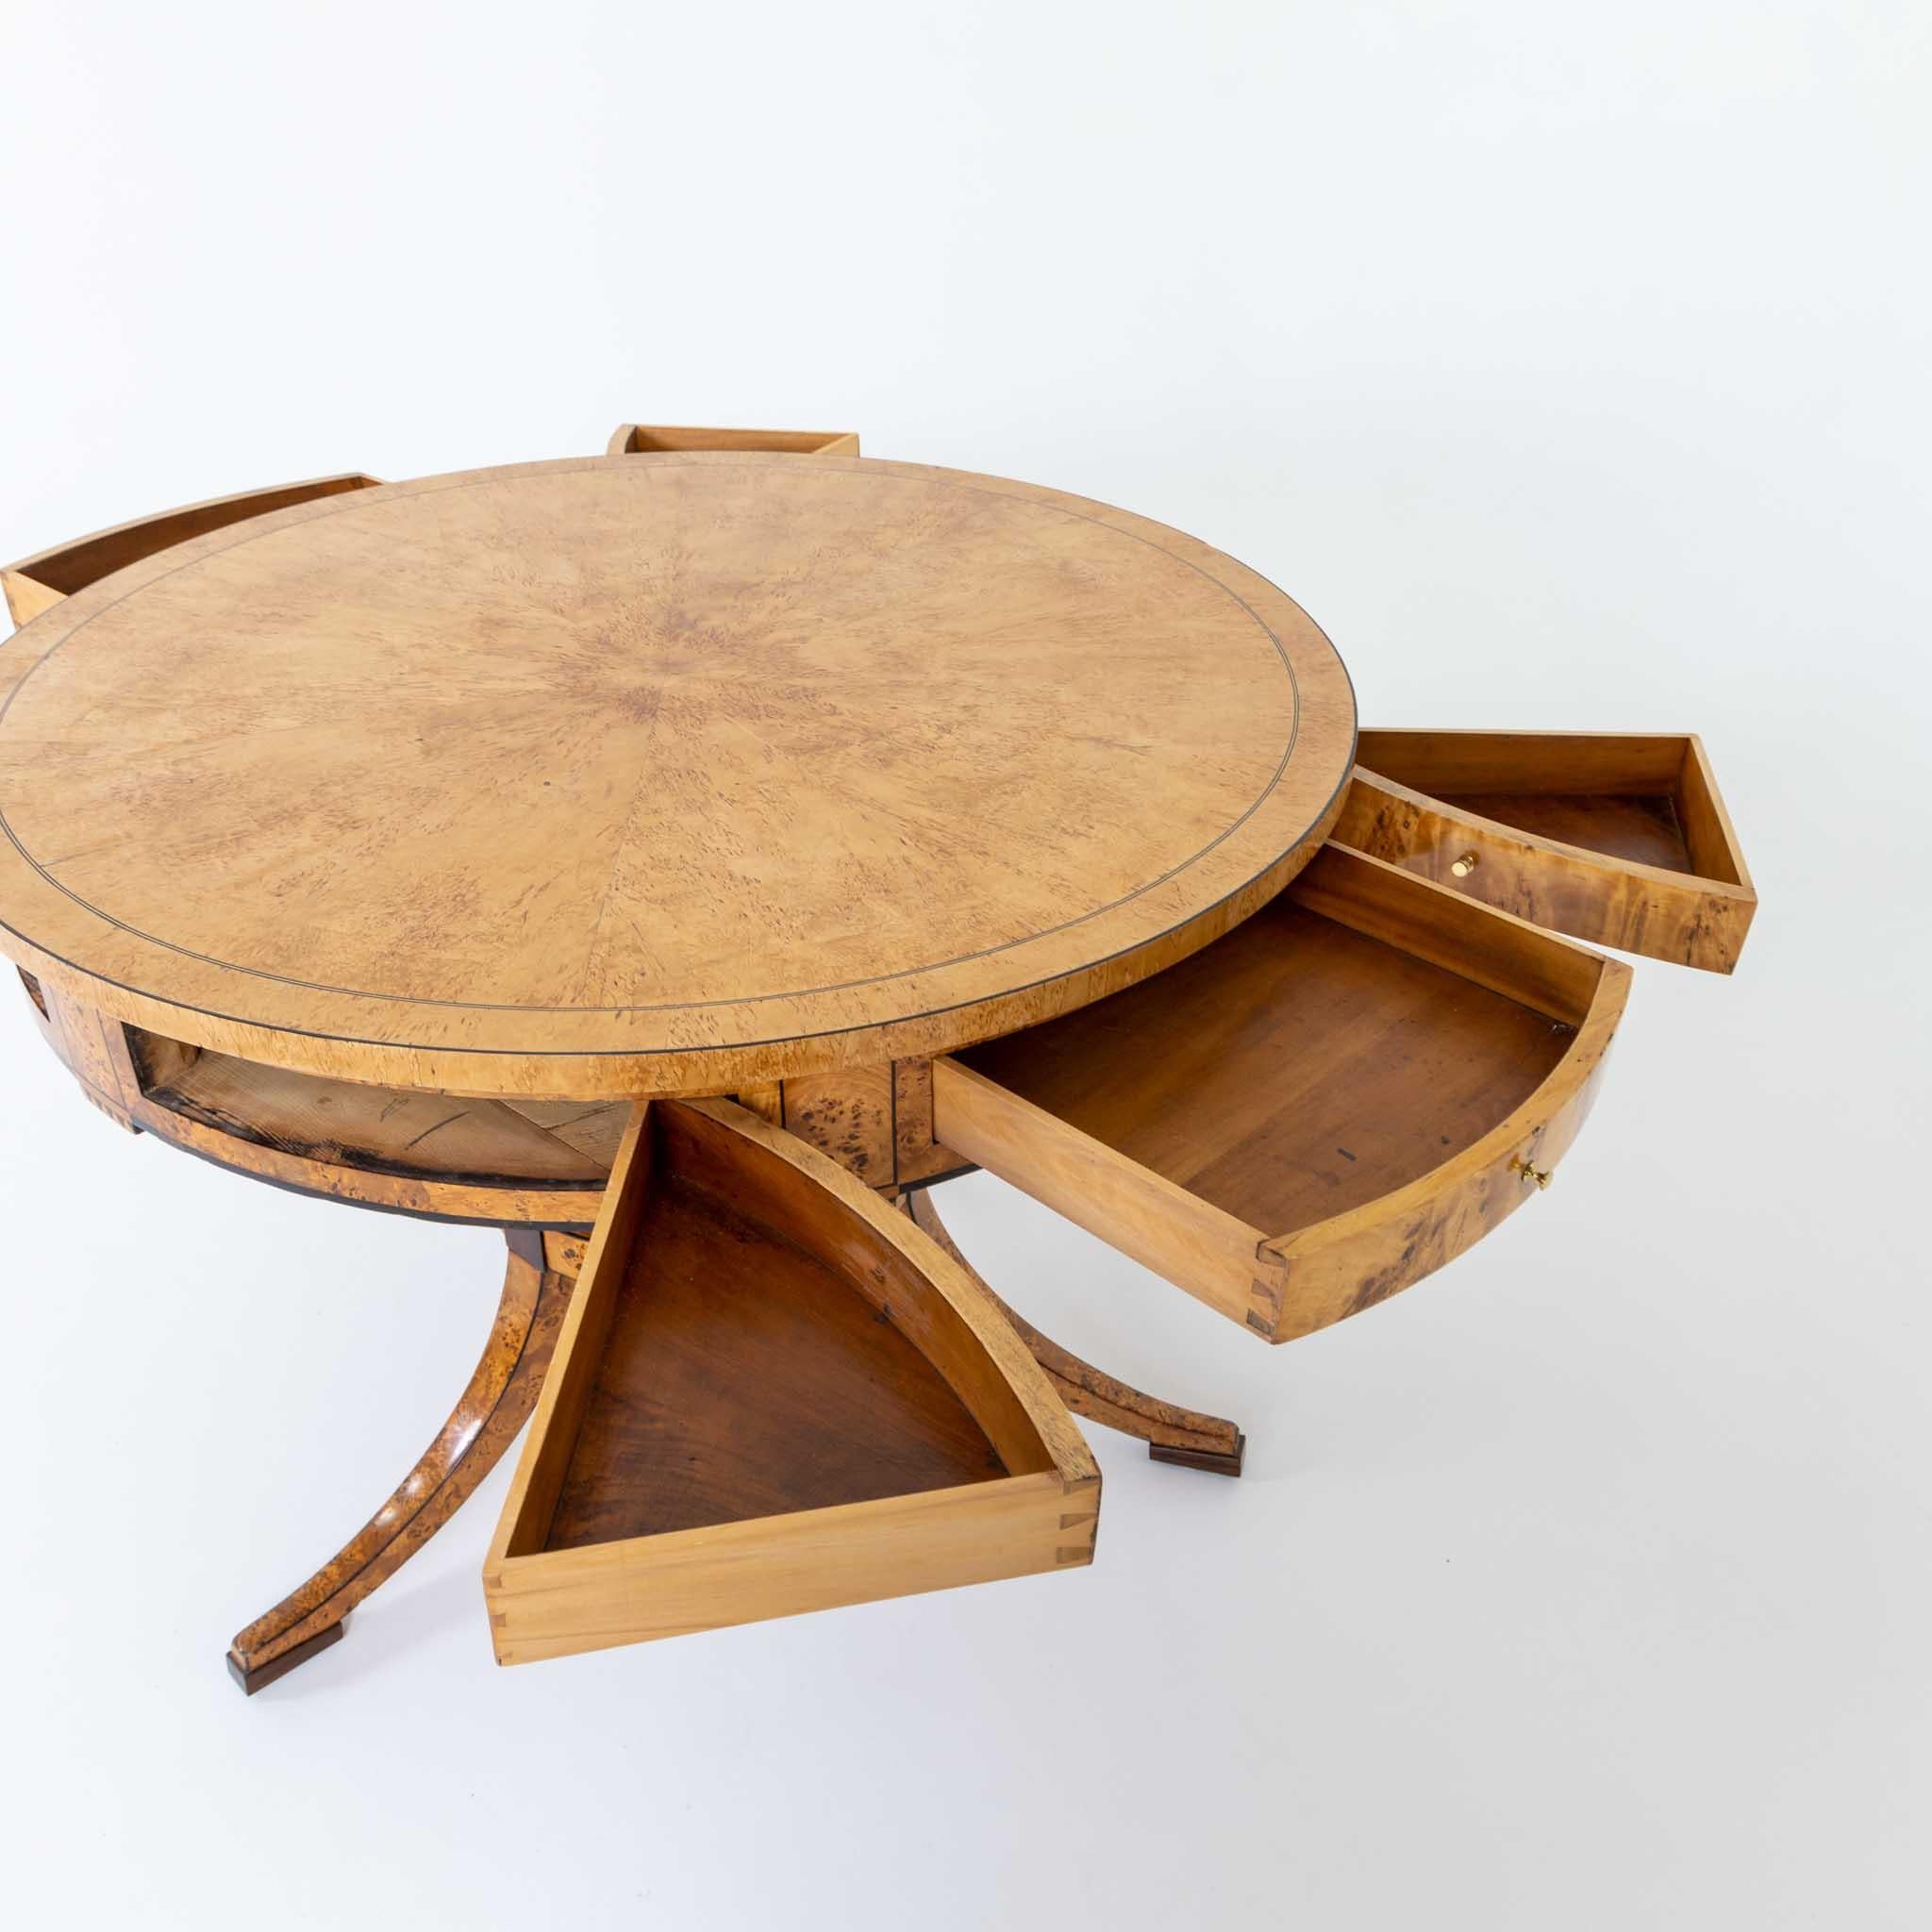 Biedermeier-Spieltisch aus Birke, Baltische Staaten, frühes 19. Jahrhundert (Frühes 19. Jahrhundert)